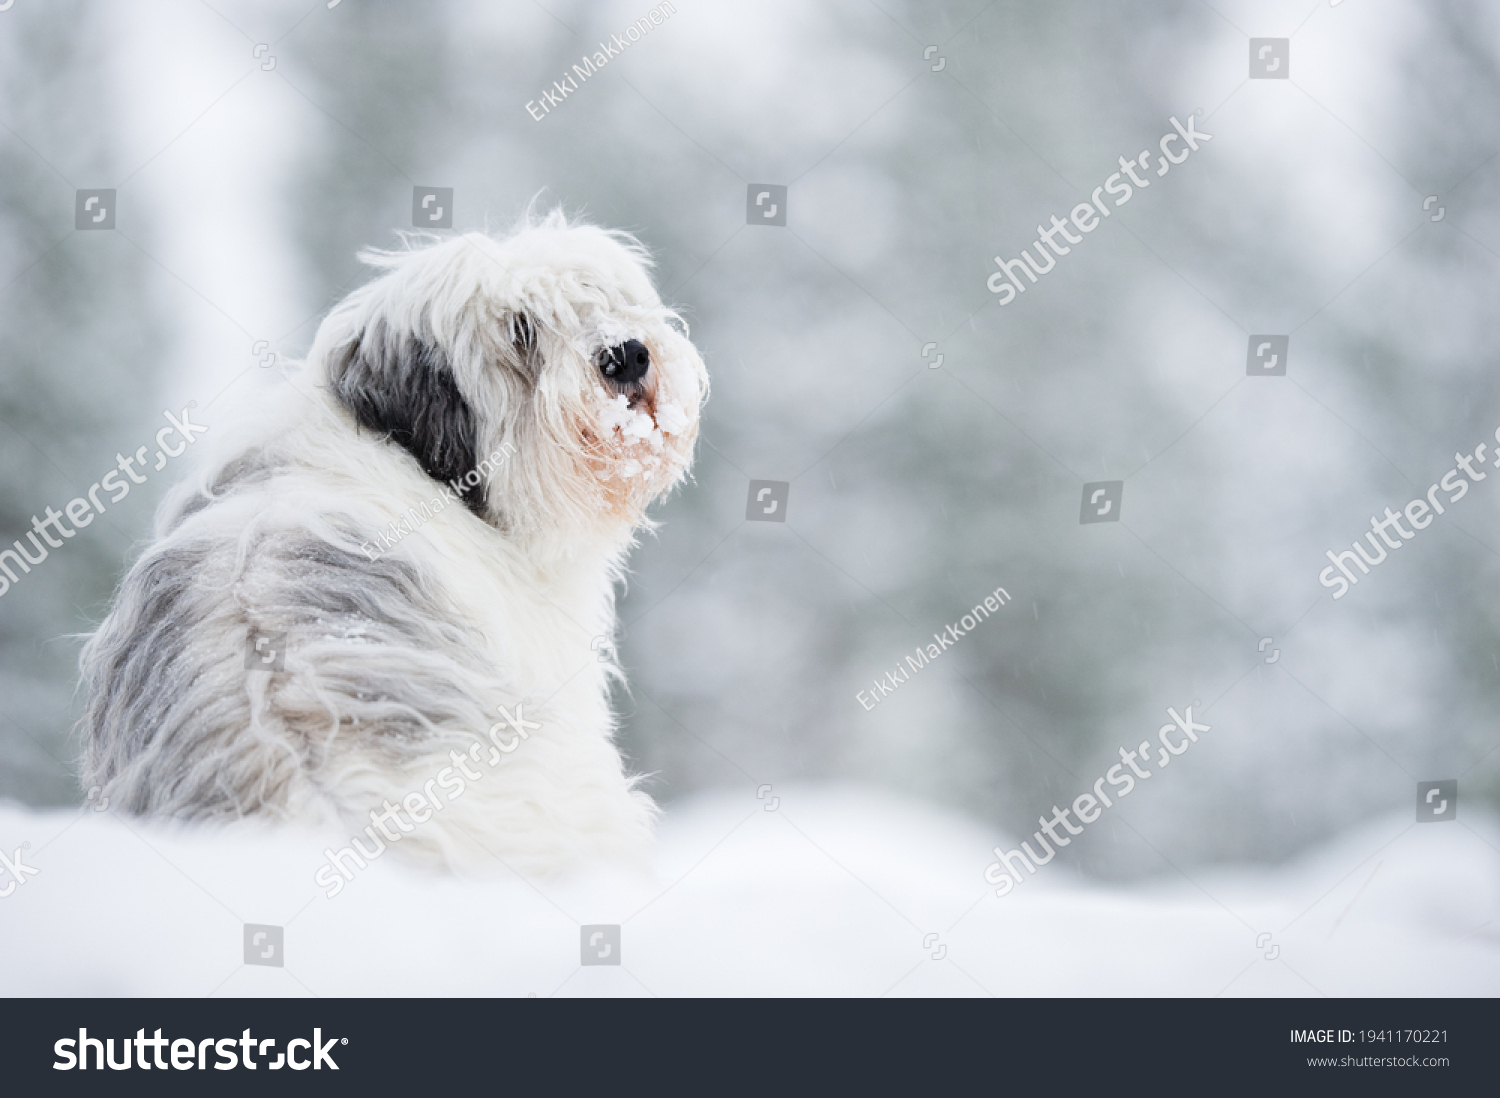 Polish lowland sheepdog, Polski Owczarek Nizinny, in winter snow. Focus on head, shallow depth of field. #1941170221